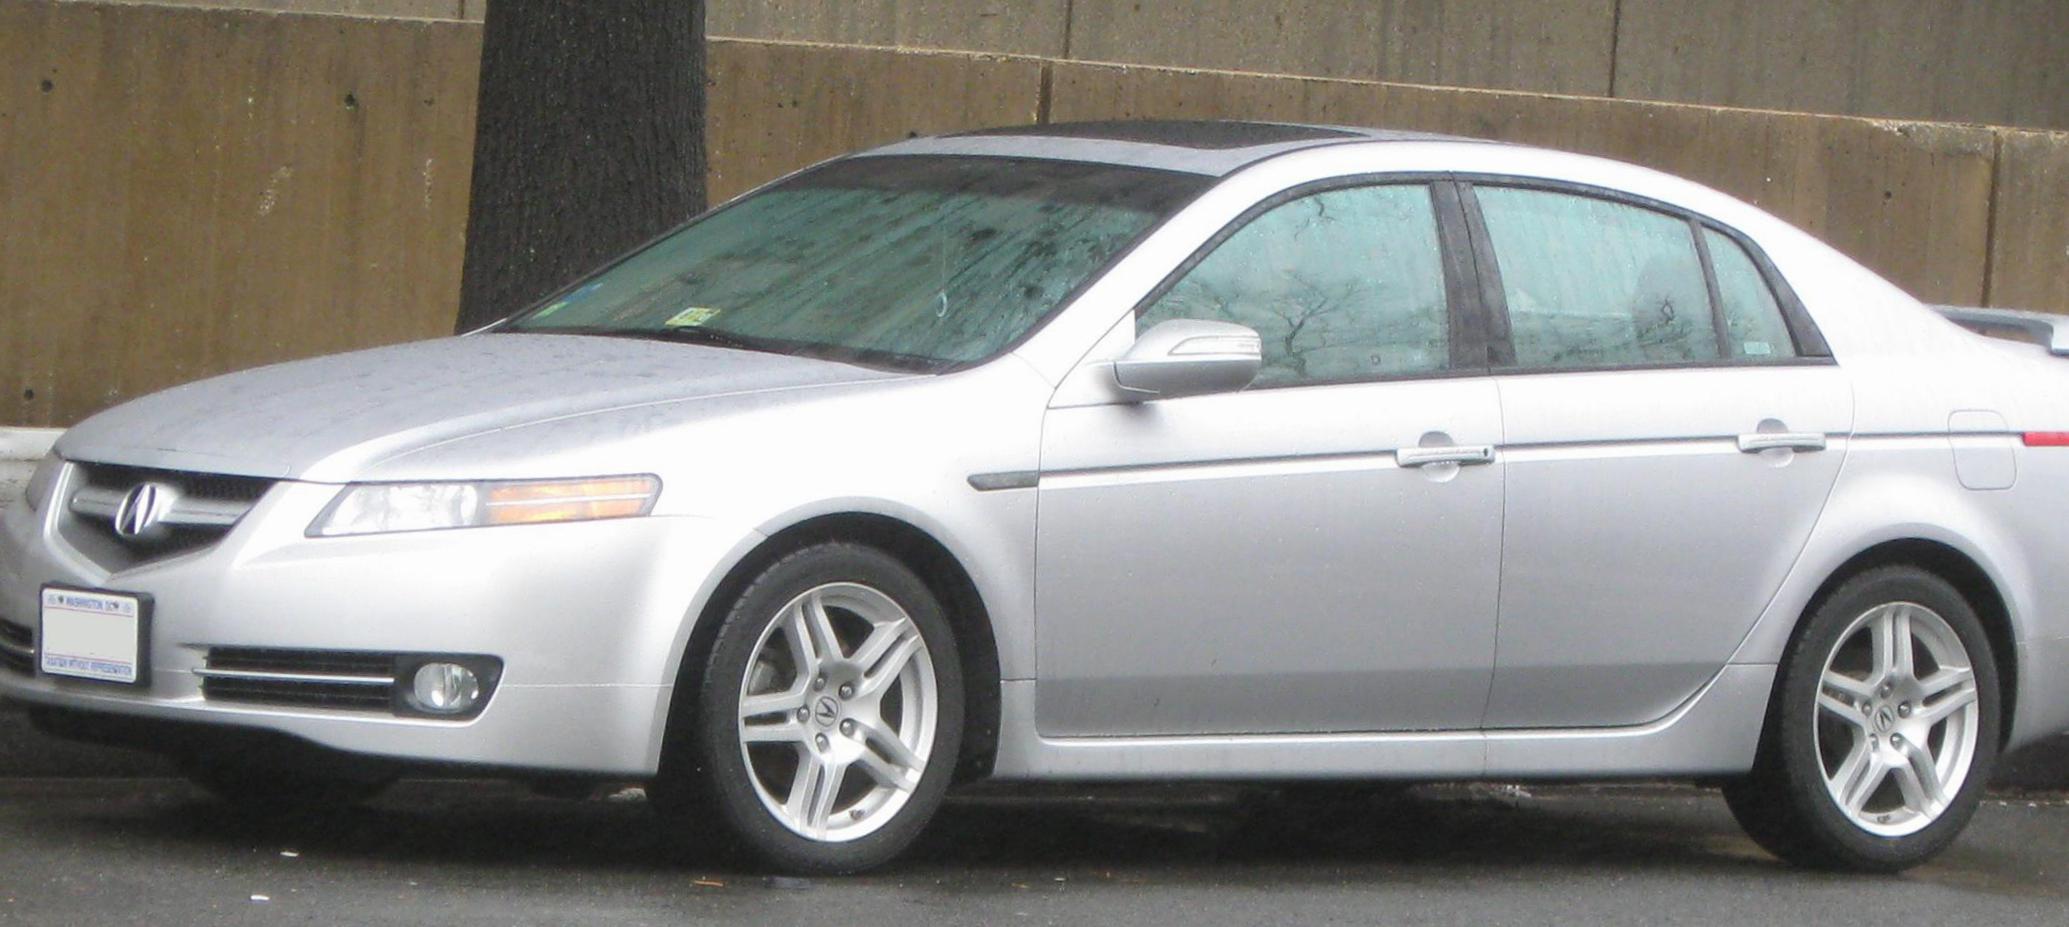 Acura TL cost 2009